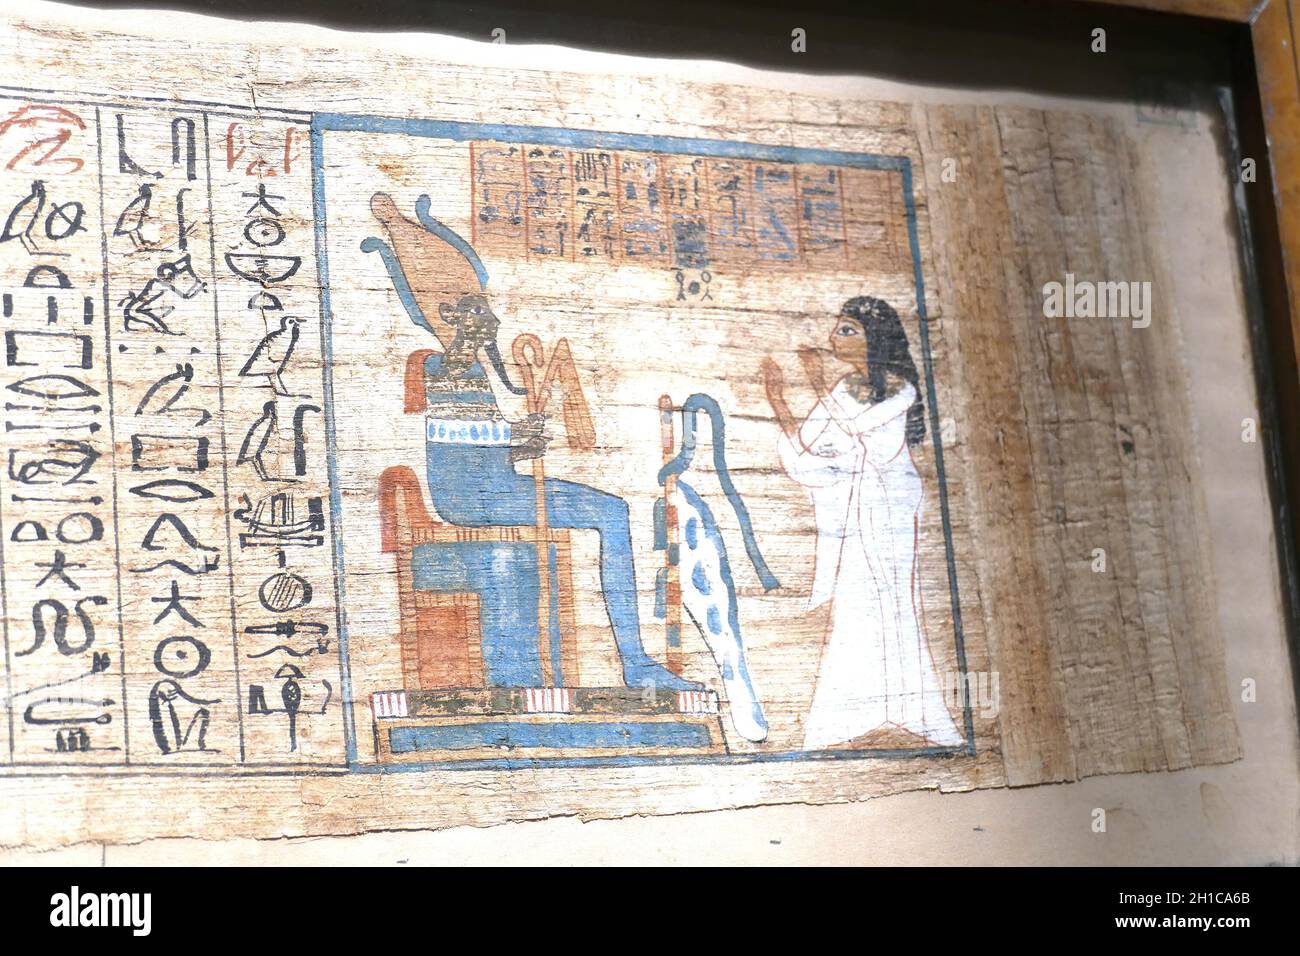 Gros plan des anciens hiéroglyphes égyptiens anciens et des dessins sur le papyrus Banque D'Images